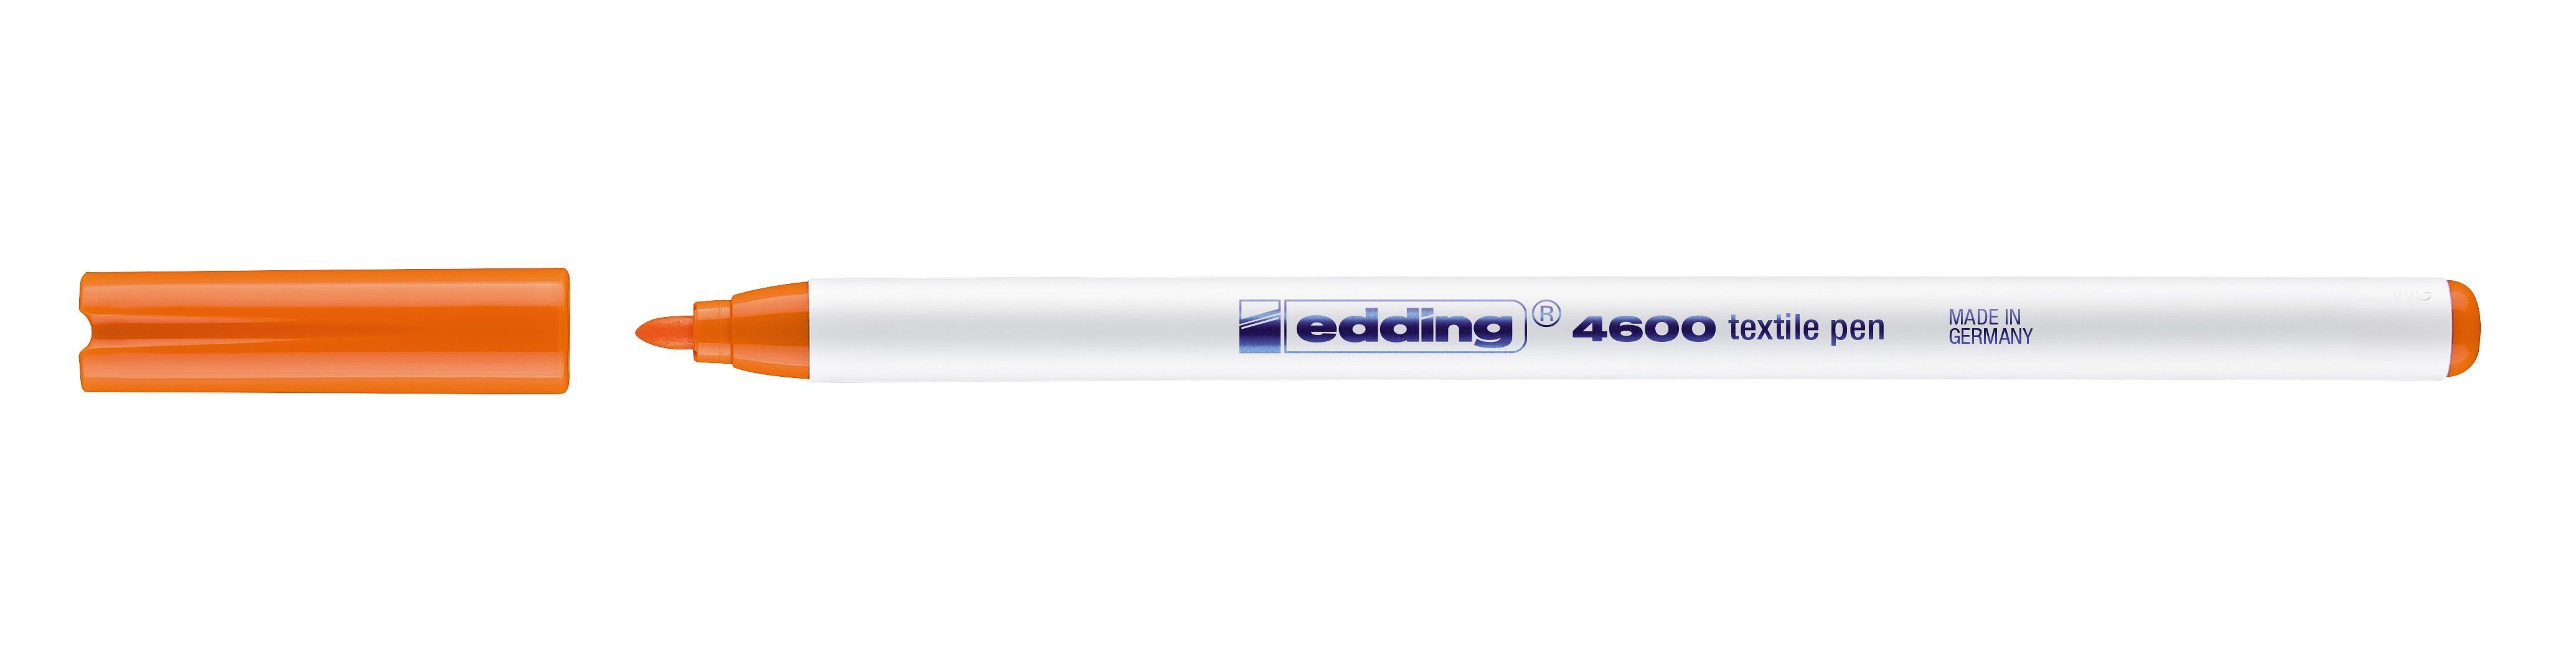 edding Isolierband 4600 Textilpen - Rundspitze, 1 mm, orange | Isolierbänder